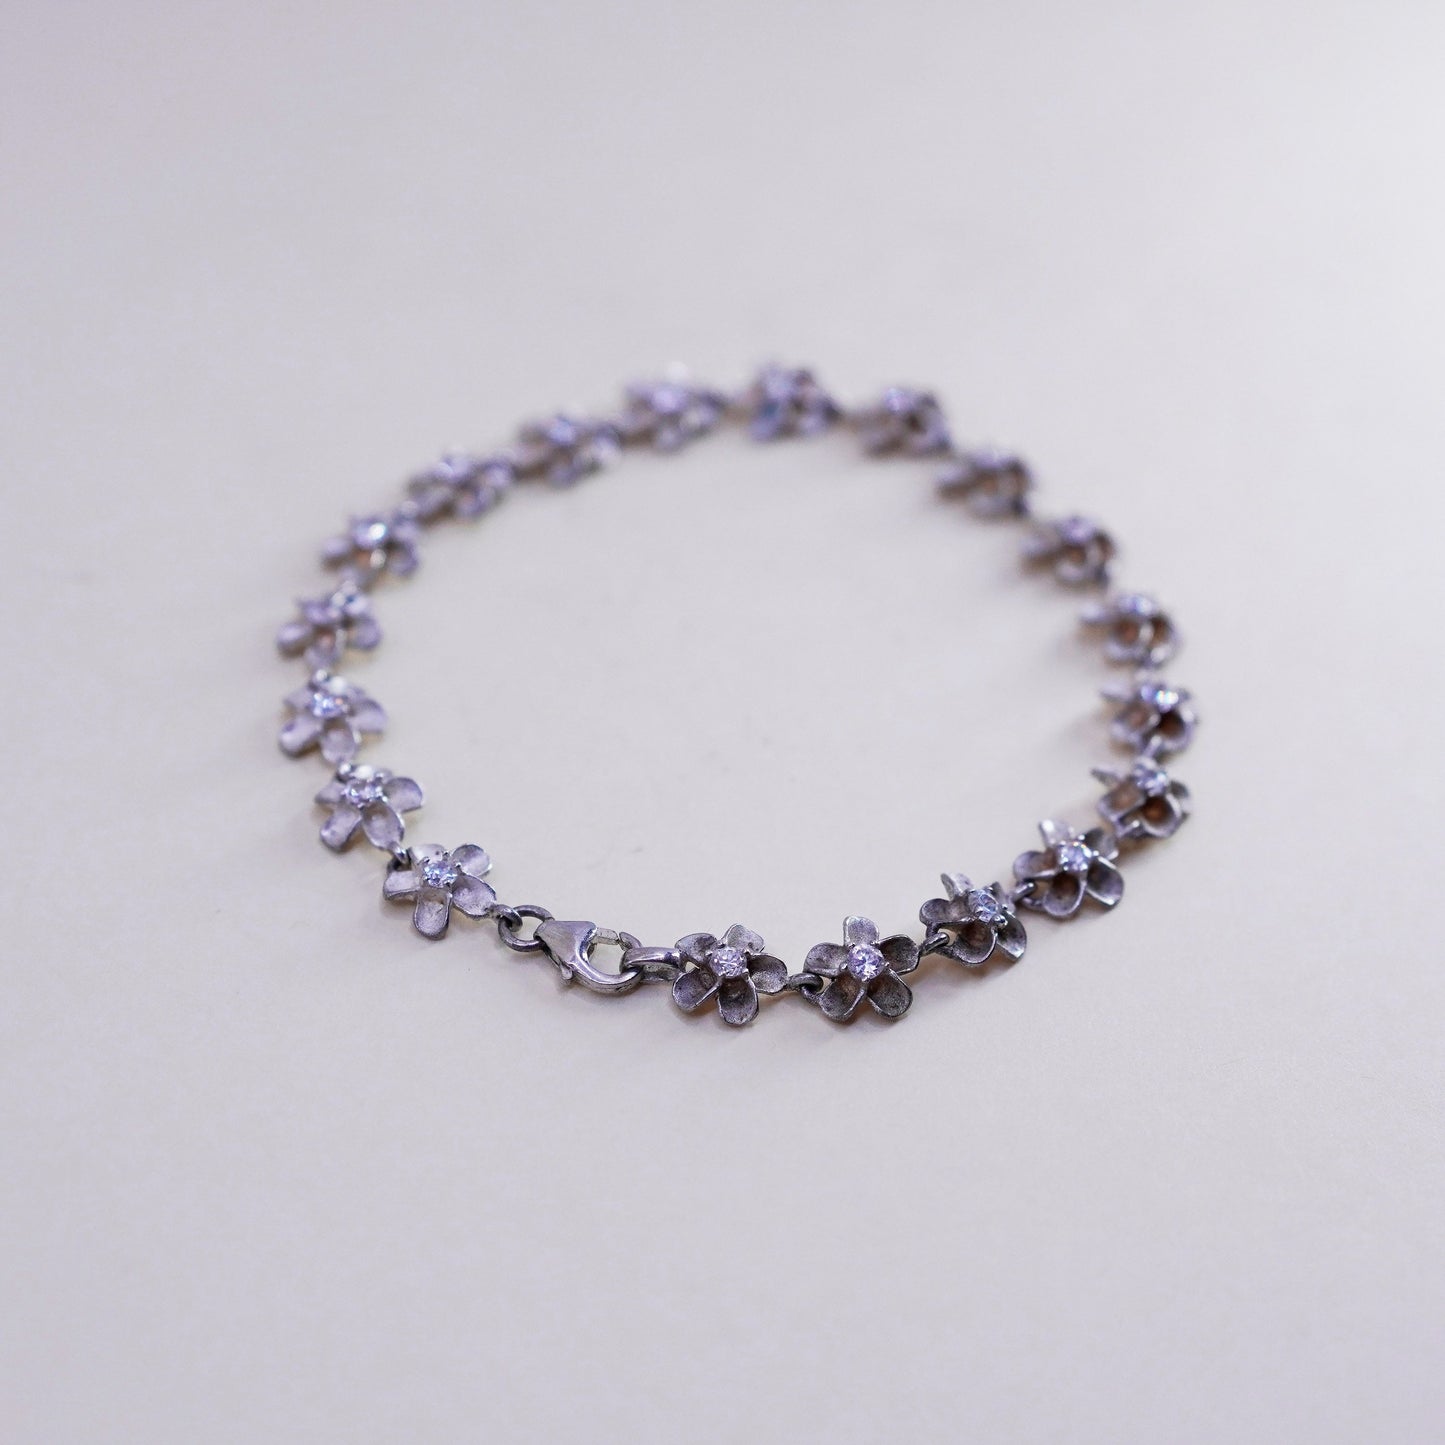 7.5”, sterling silver bracelet, 925 plumeria flowers with cz, handmade jewelry